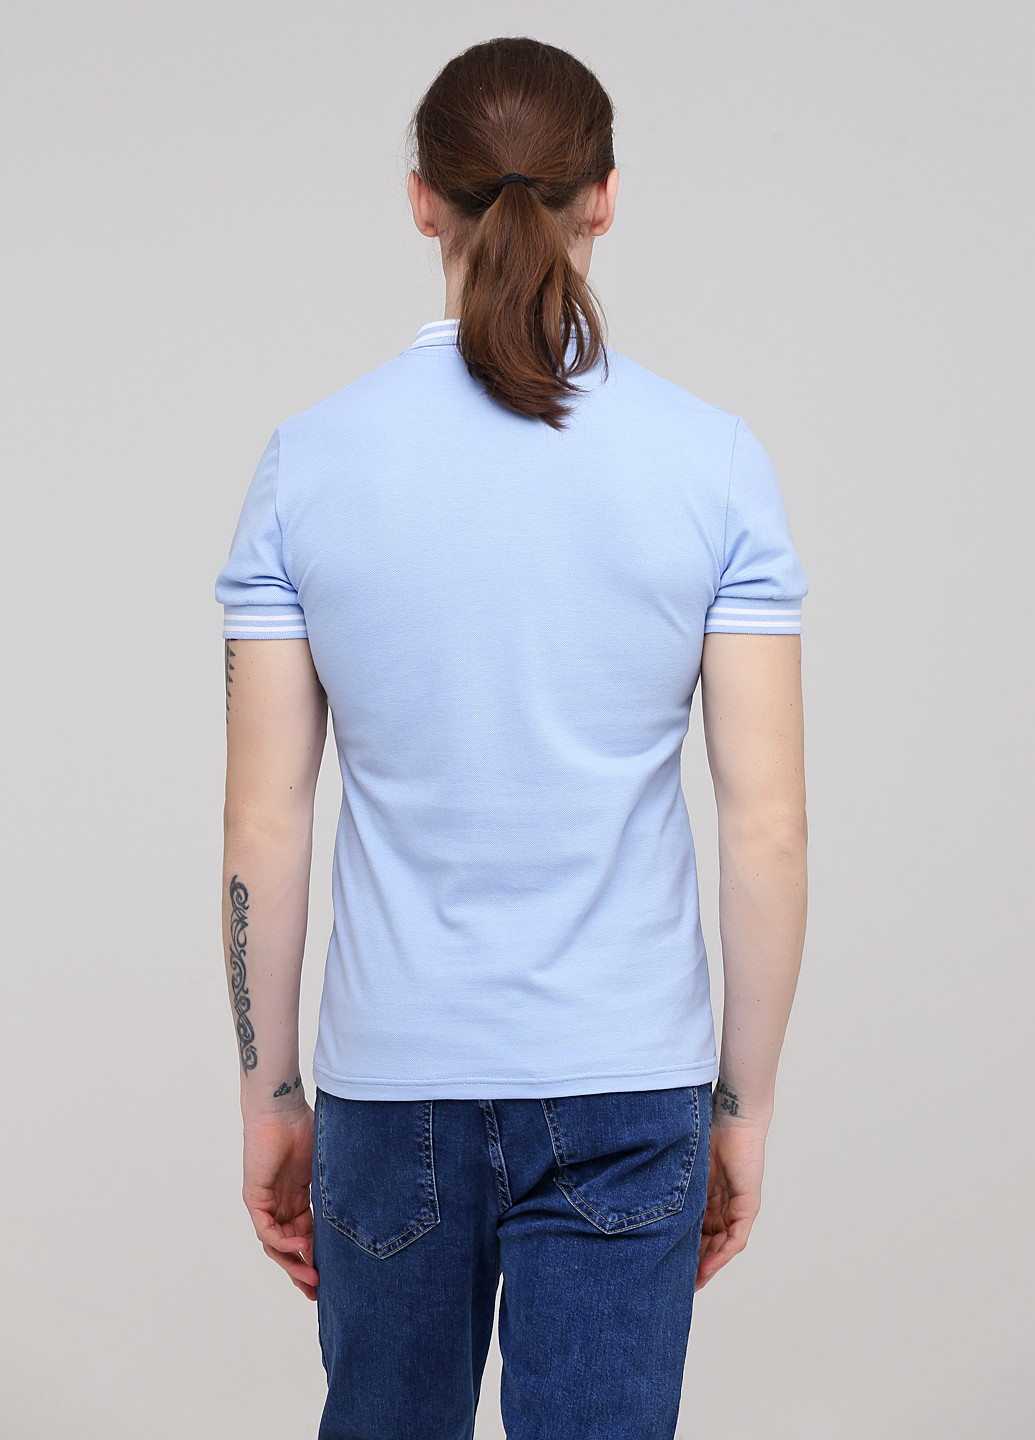 Голубой футболка-мужская футболка поло с манжетами 100% хлопок голубая для мужчин Melgo однотонная